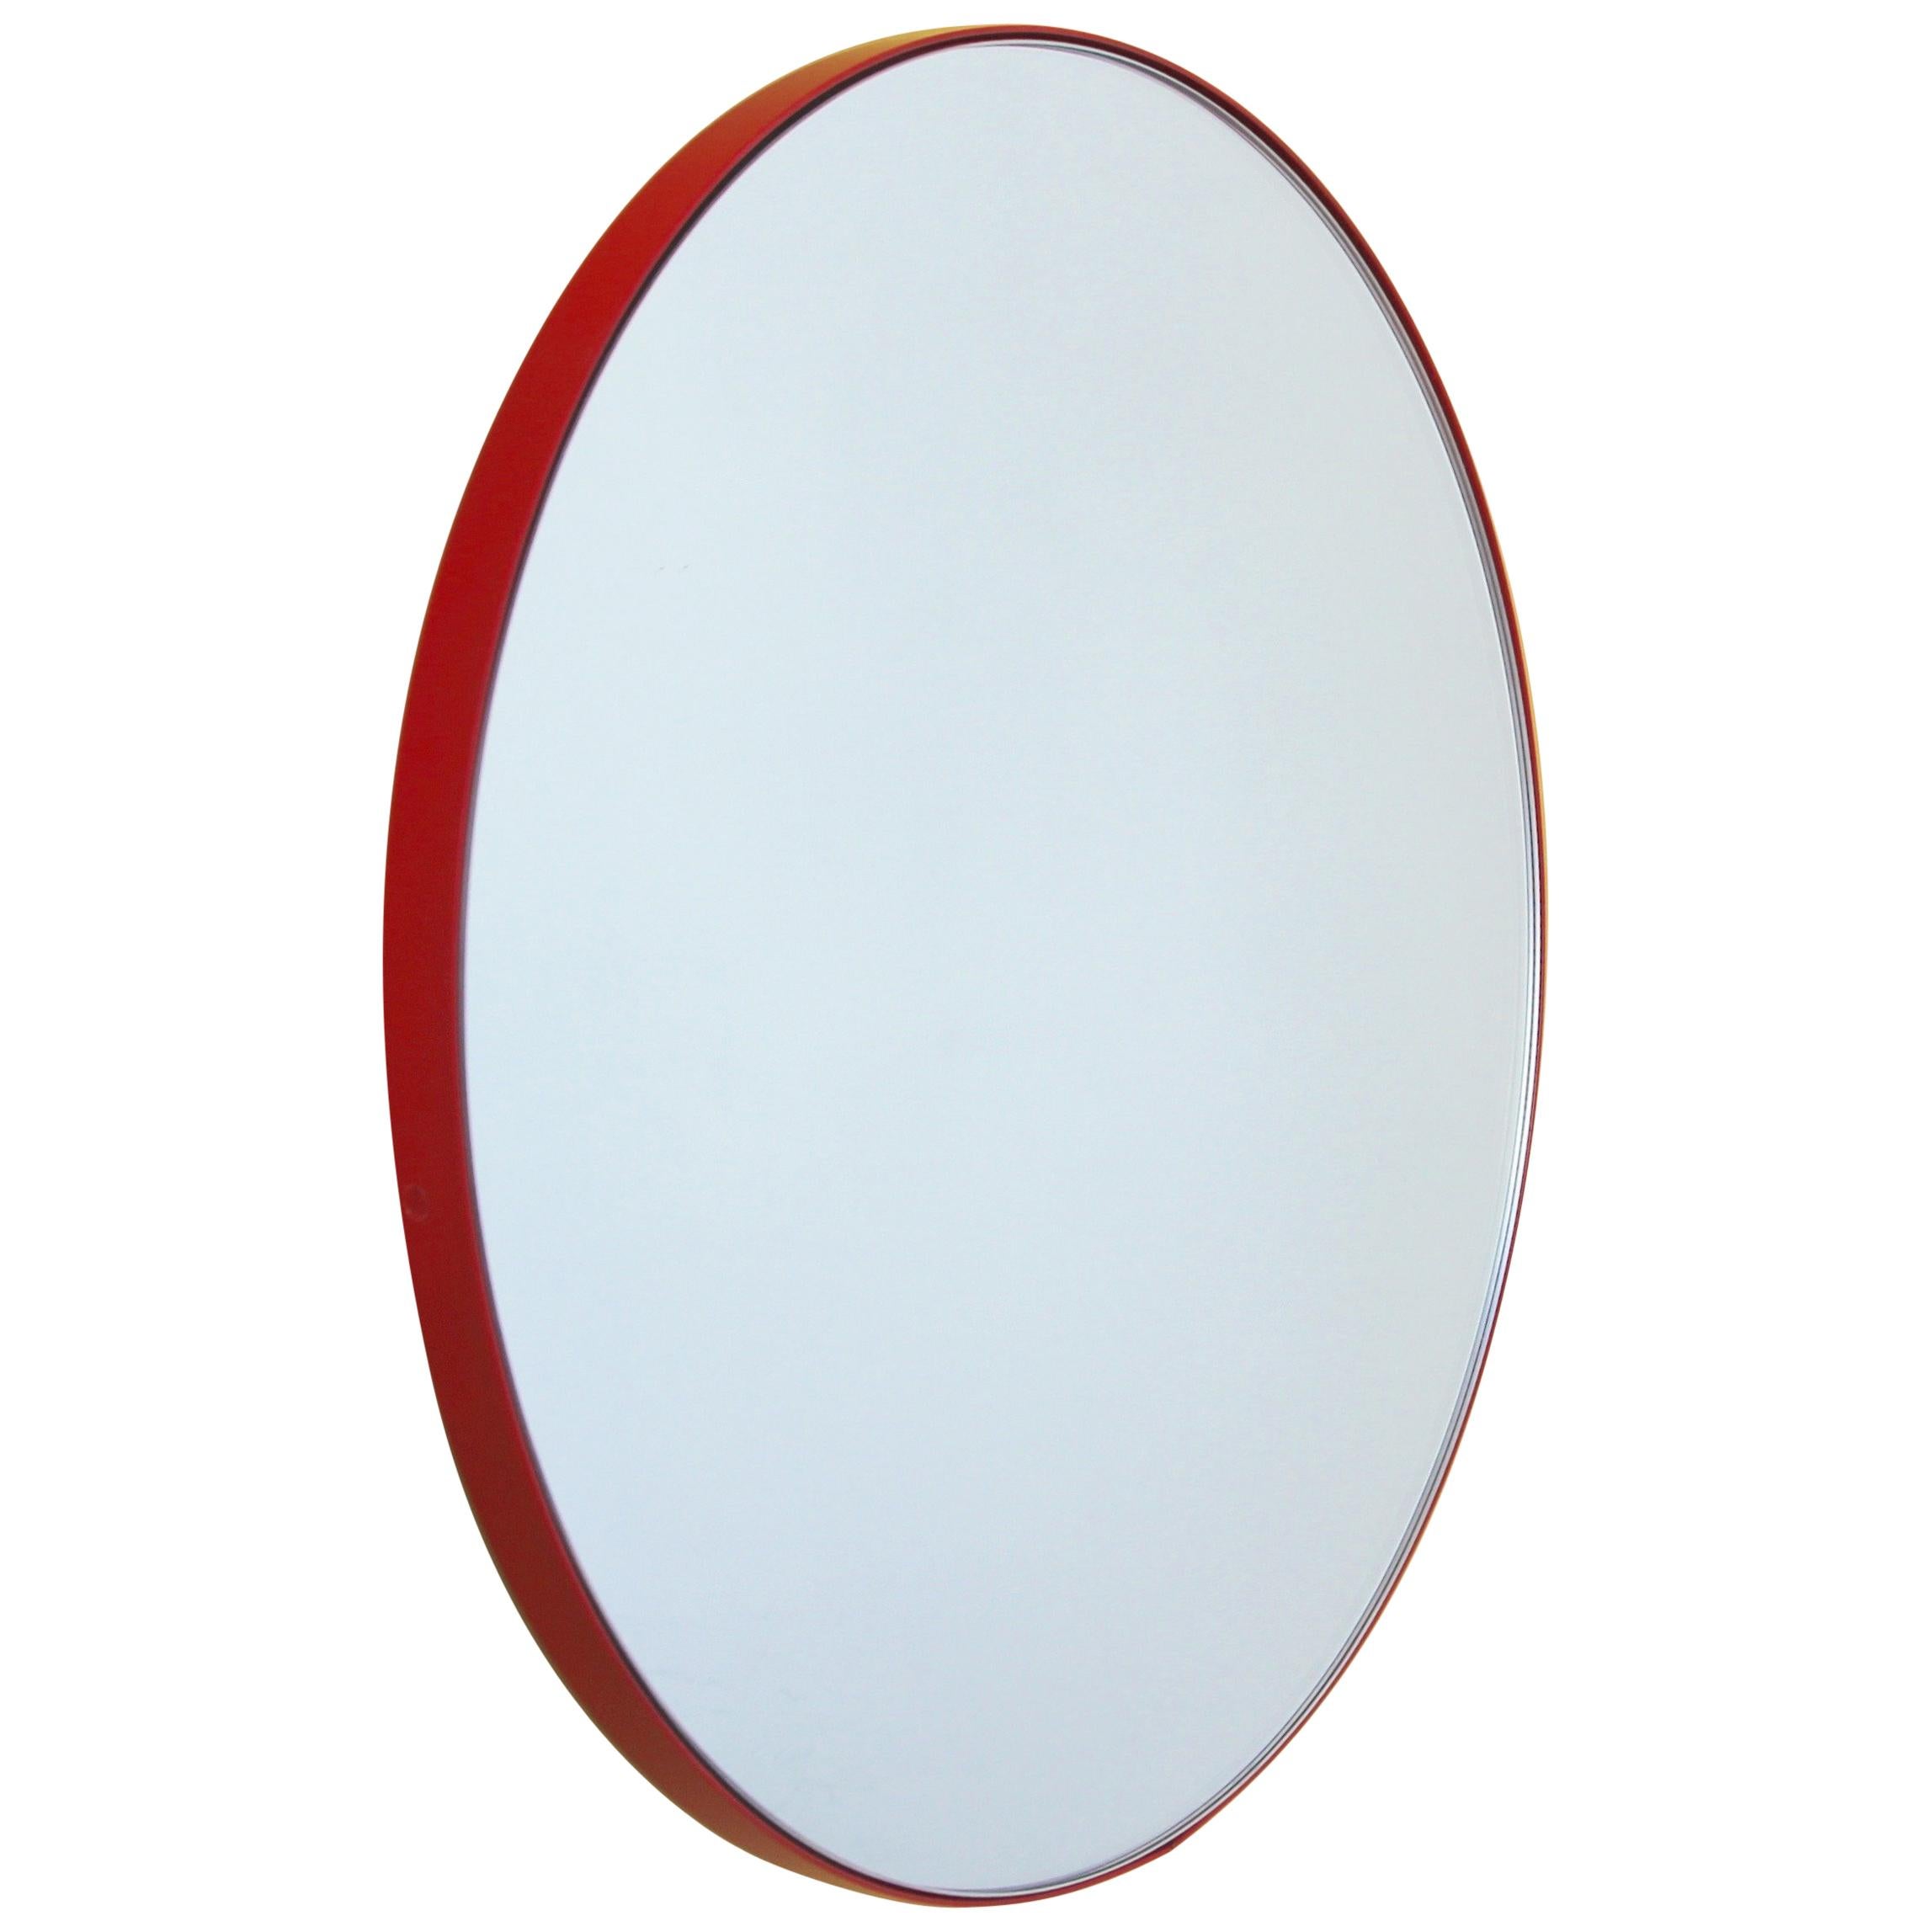 Miroir rond contemporain Orbis avec cadre rouge, grand modèle